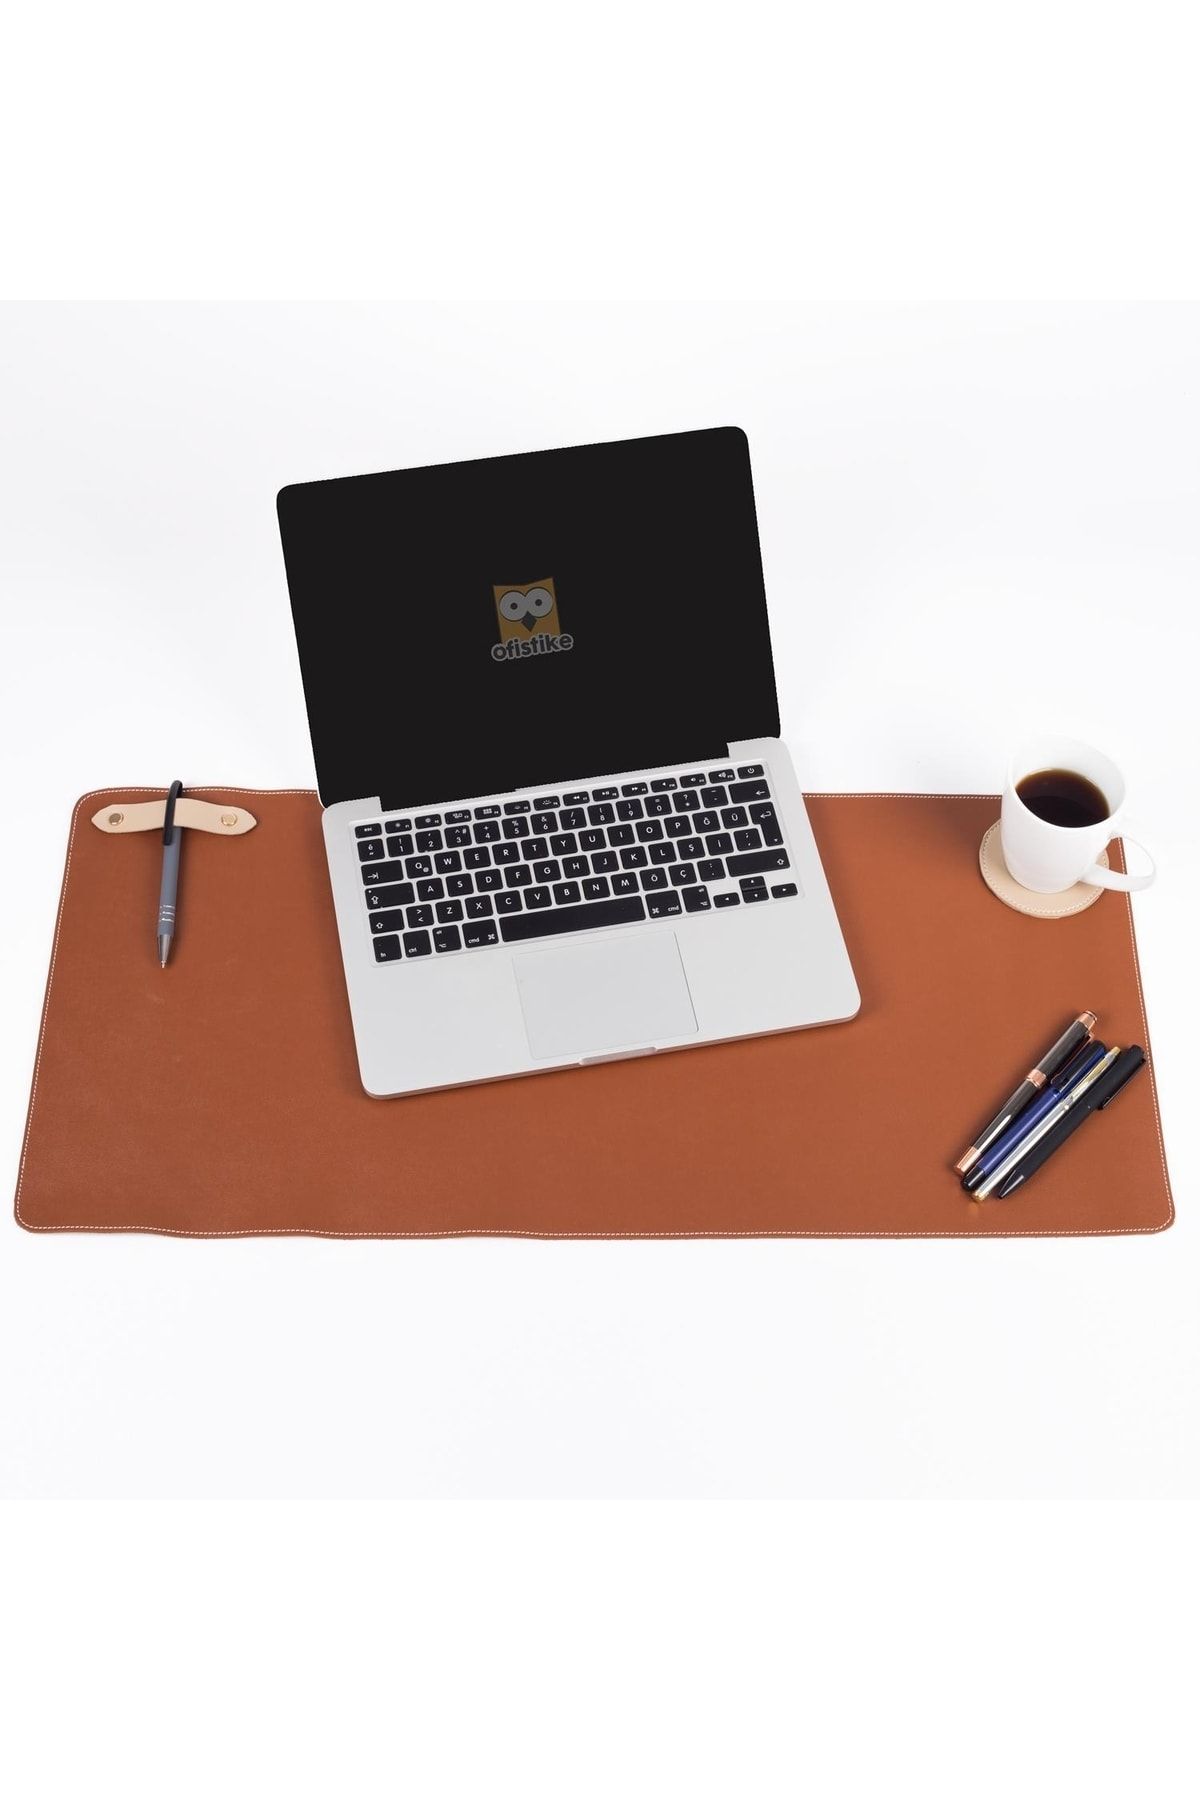 Ofistike Deri Masa Pedi Ofis Ve Ev Masa Matı - Laptop Sümeni Ve Geniş Mouse Altlığı Masa Sümen Takımı